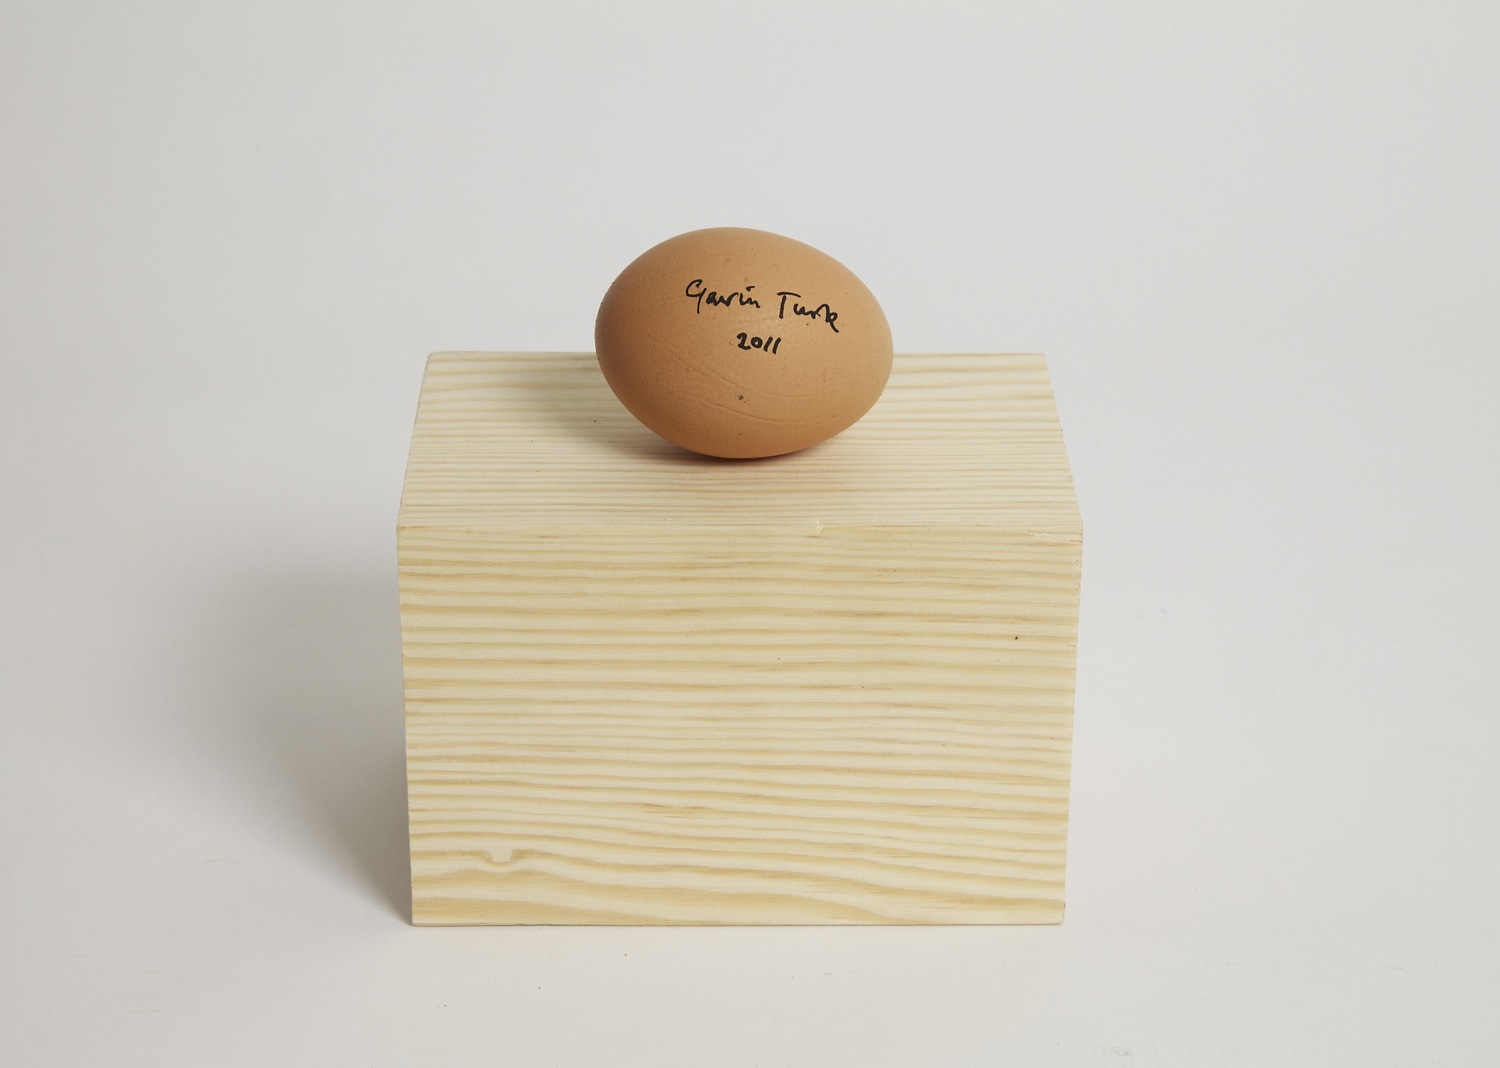 Gavin Turk - SIgned Egg